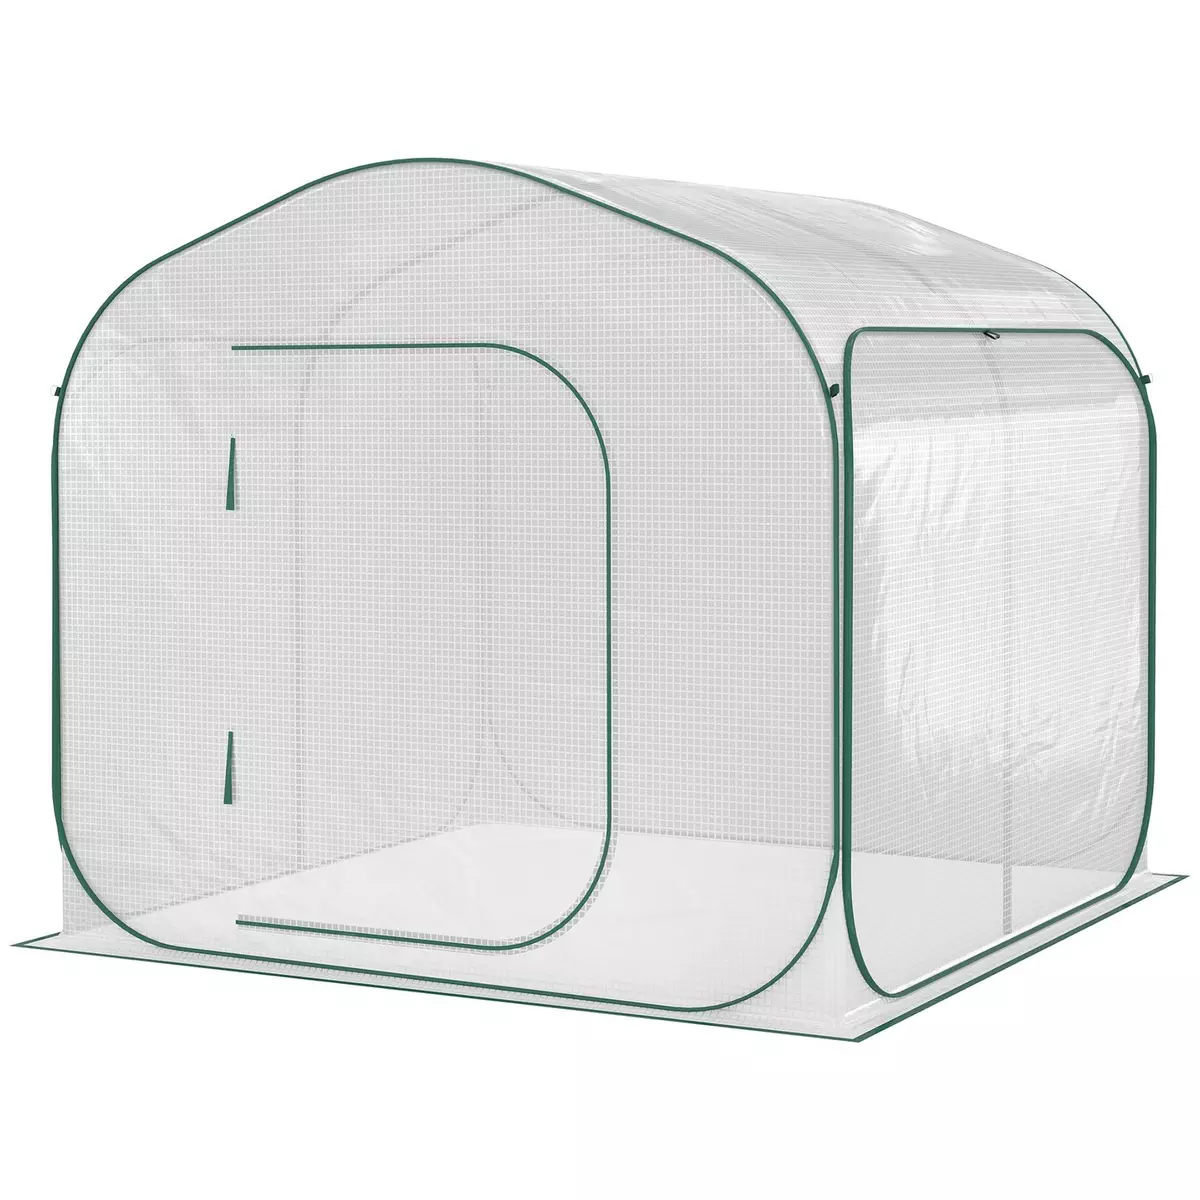 OUTSUNNY Serre pop-up - serre de jardin pop-up - porte zippée enroulable - dim. 2,08L x 2,08l x 1,95H m - sac transport inclus - PE blanc vert